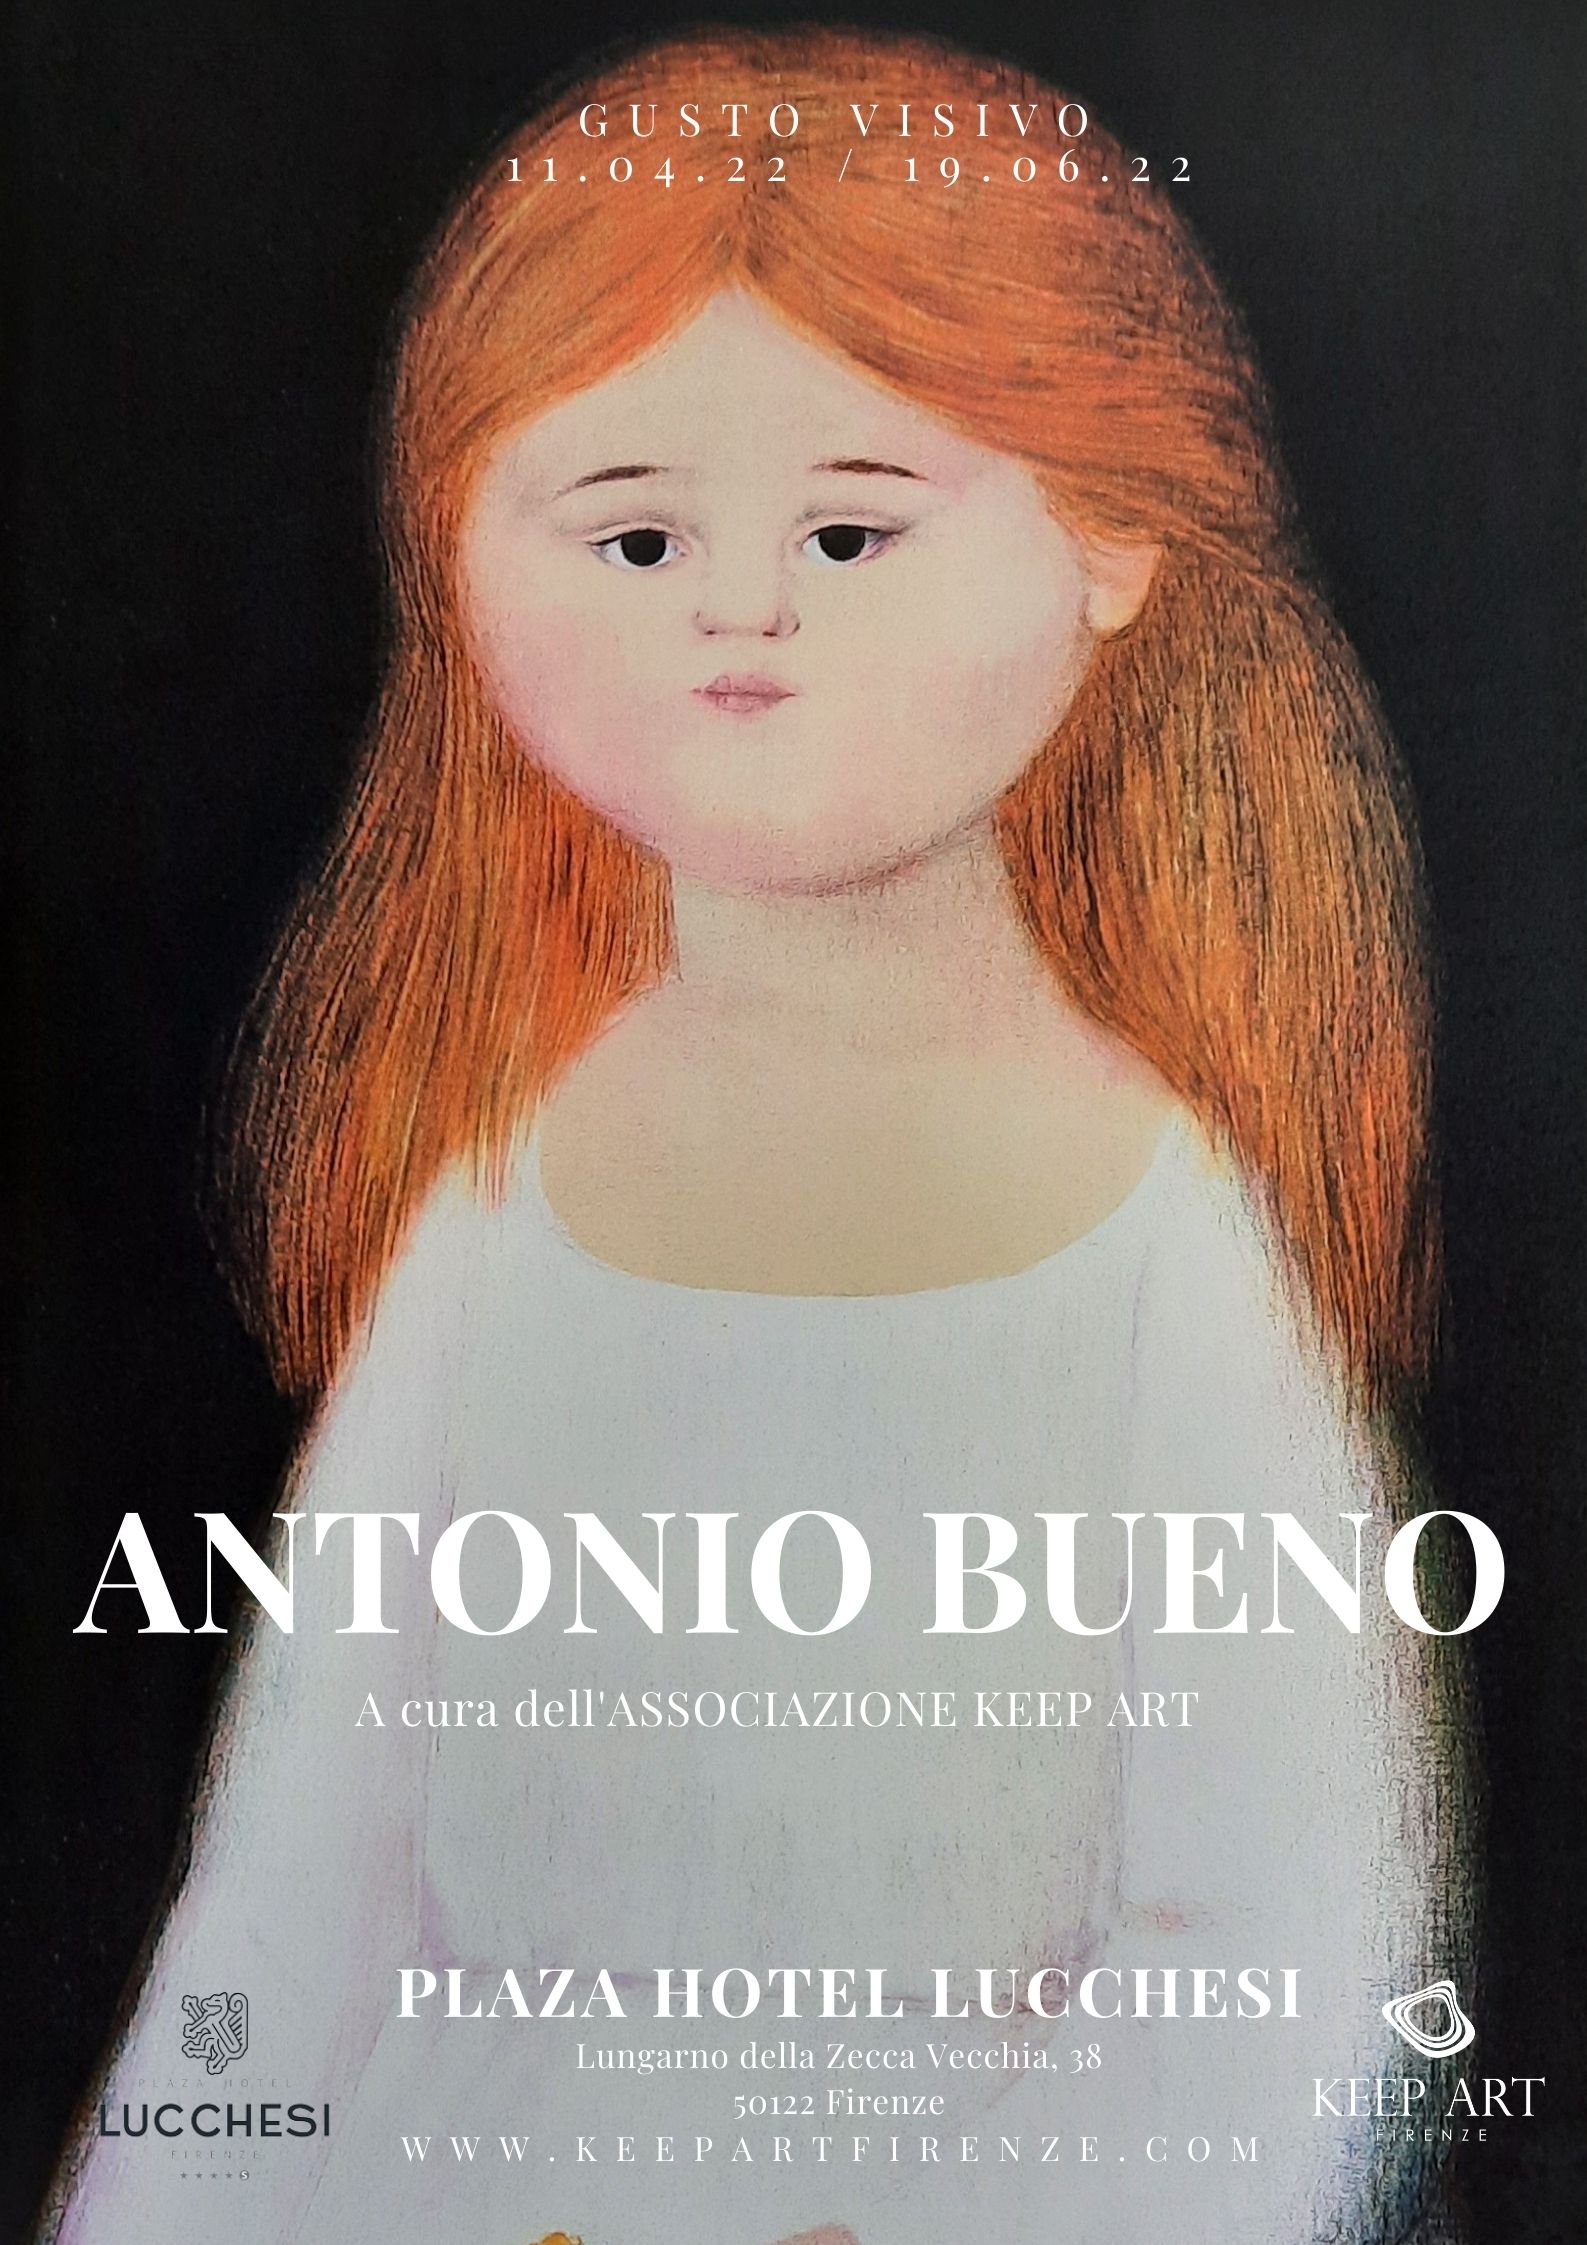 Antonio Bueno – Gusto visivo